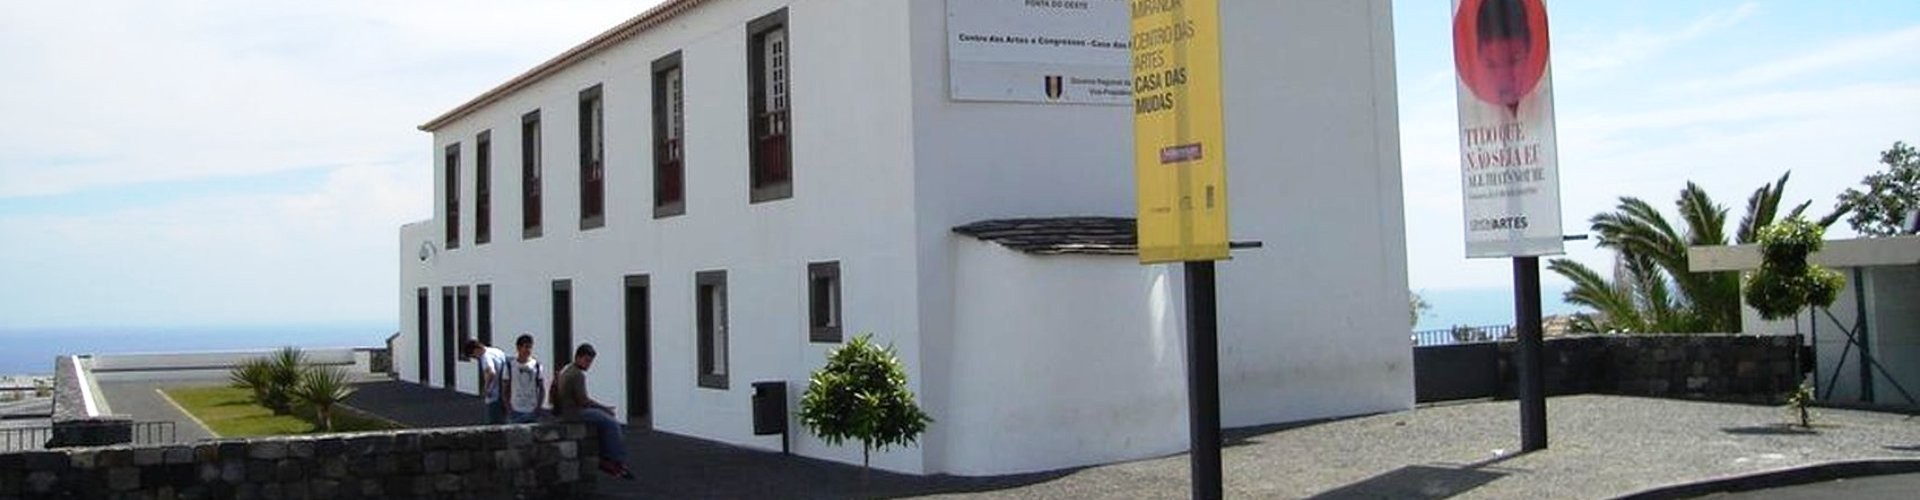 Museu de Arte Contemporânea Casa das Mudas Contemporary Art Museum